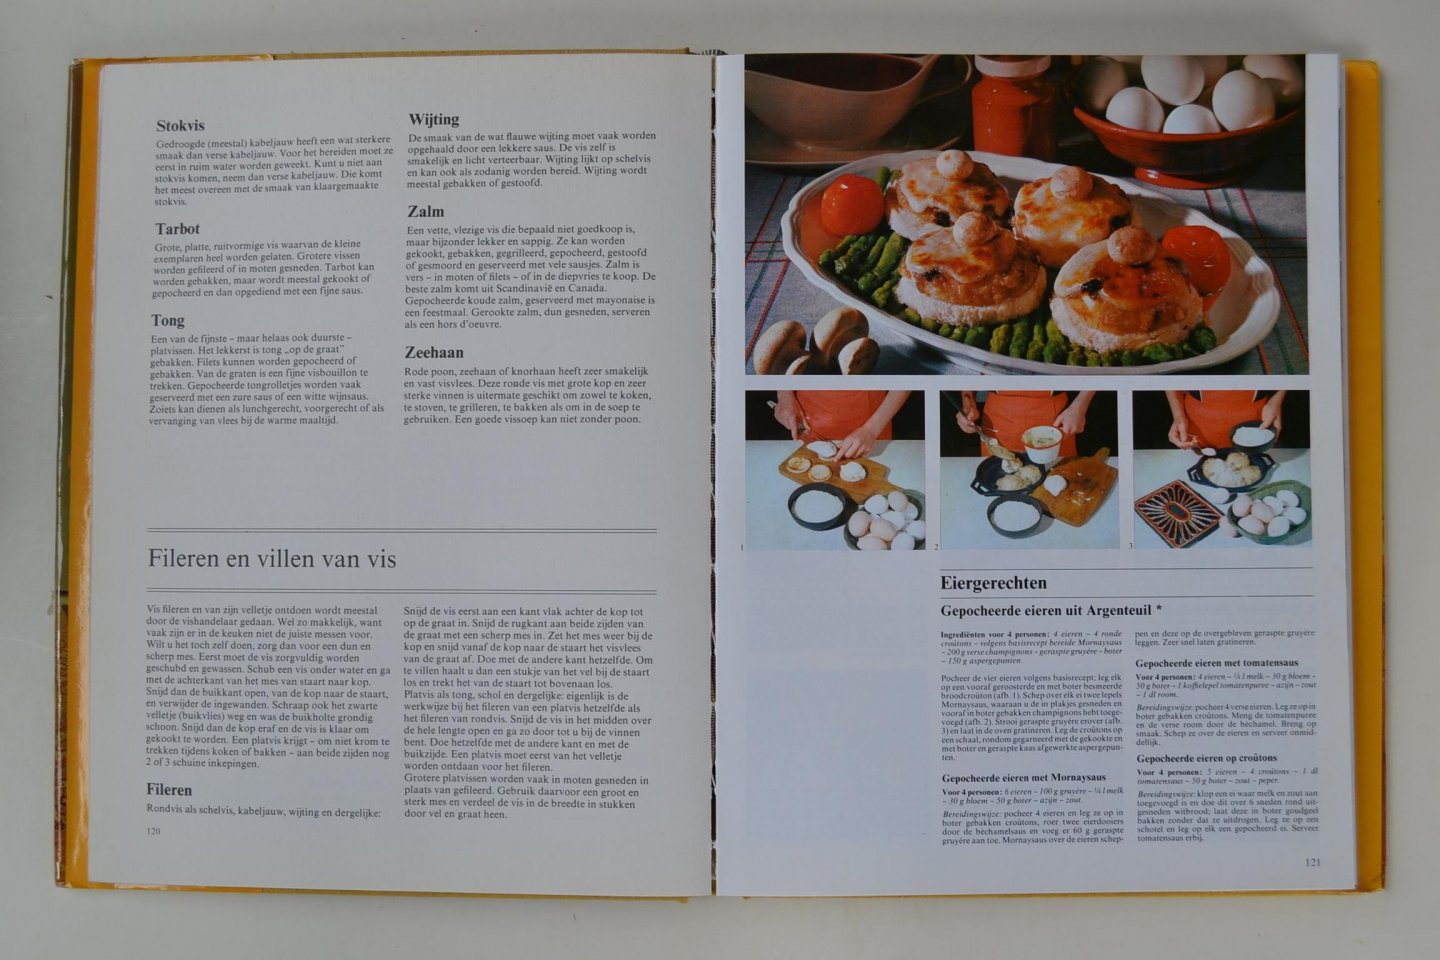  - Handboek voor kreatief koken - meer dan 1000 recepten